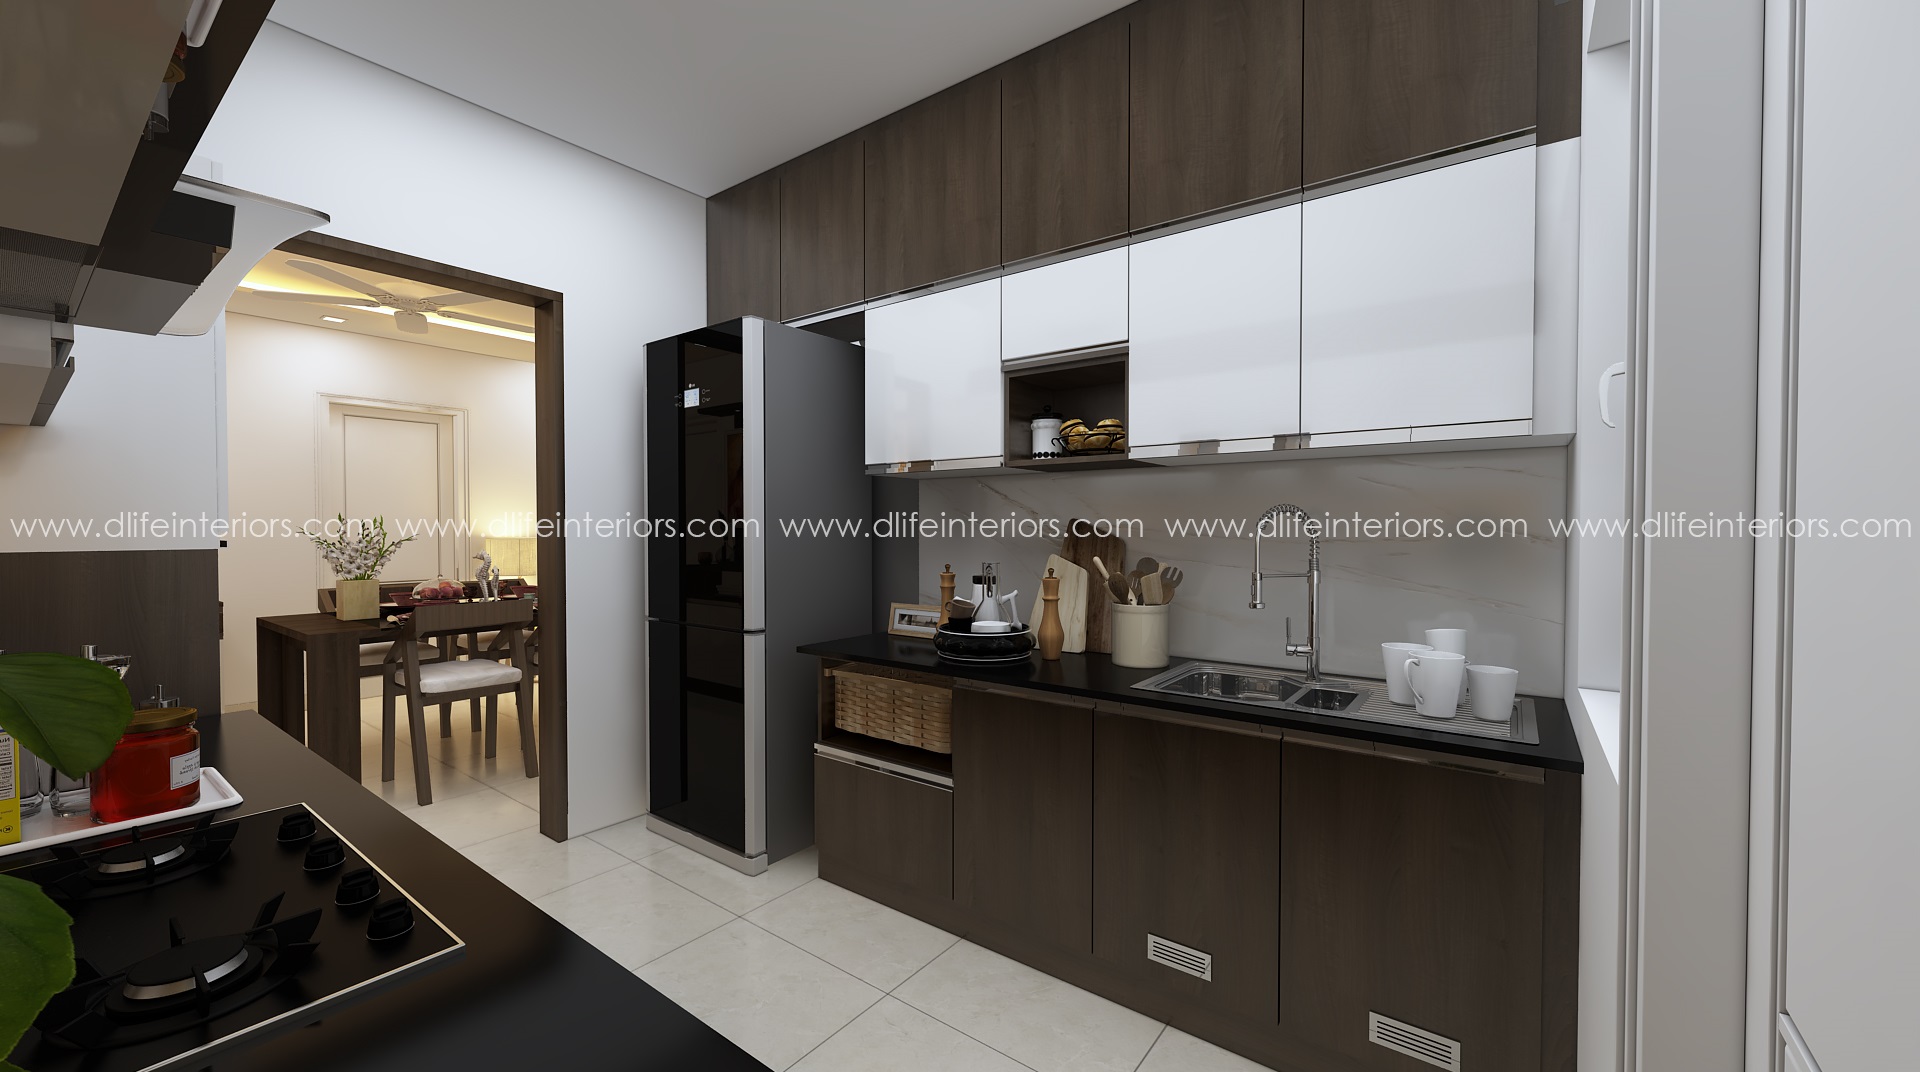 Parallel kitchen interior design in kochi